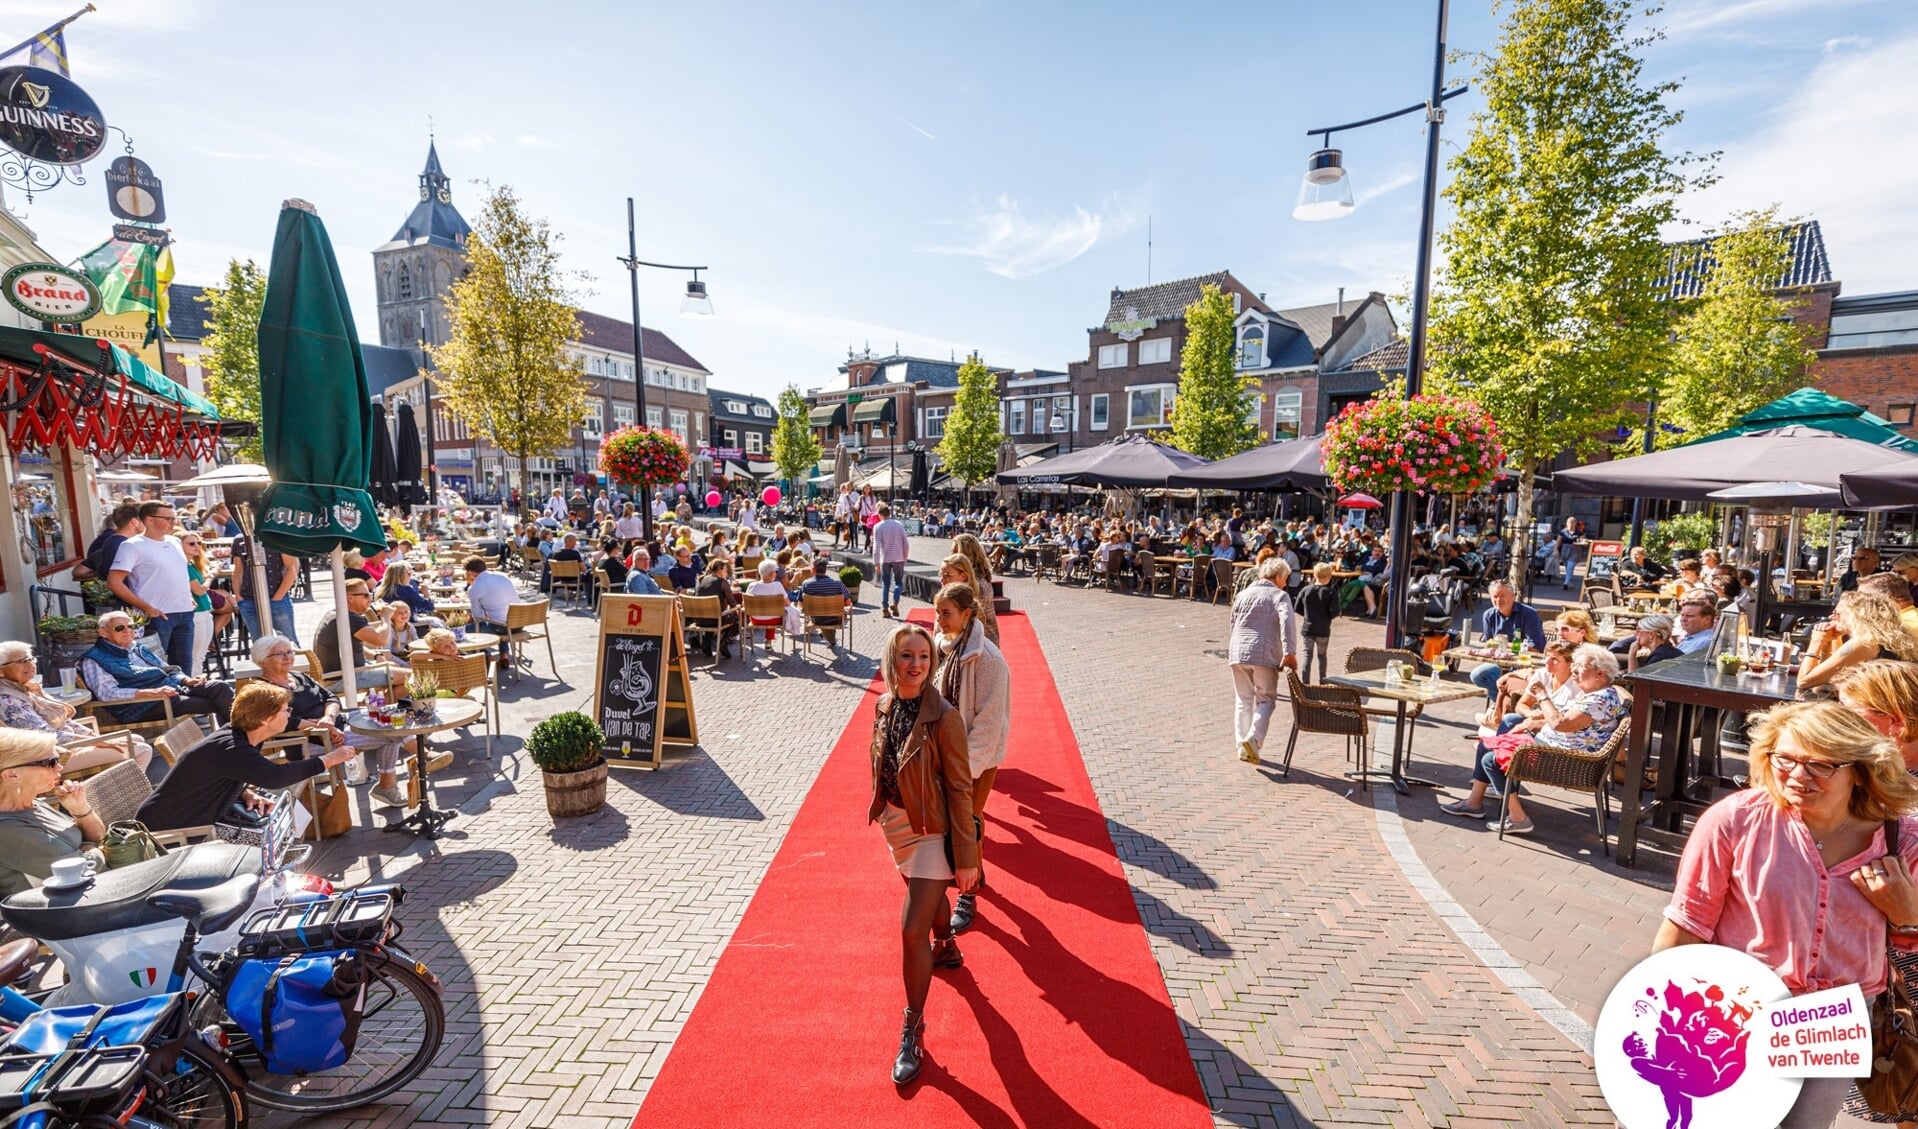 Oldenzaal kent vele leuke activiteiten; zoals hier een modeshow van lokale ondernemers in de binnenstad.